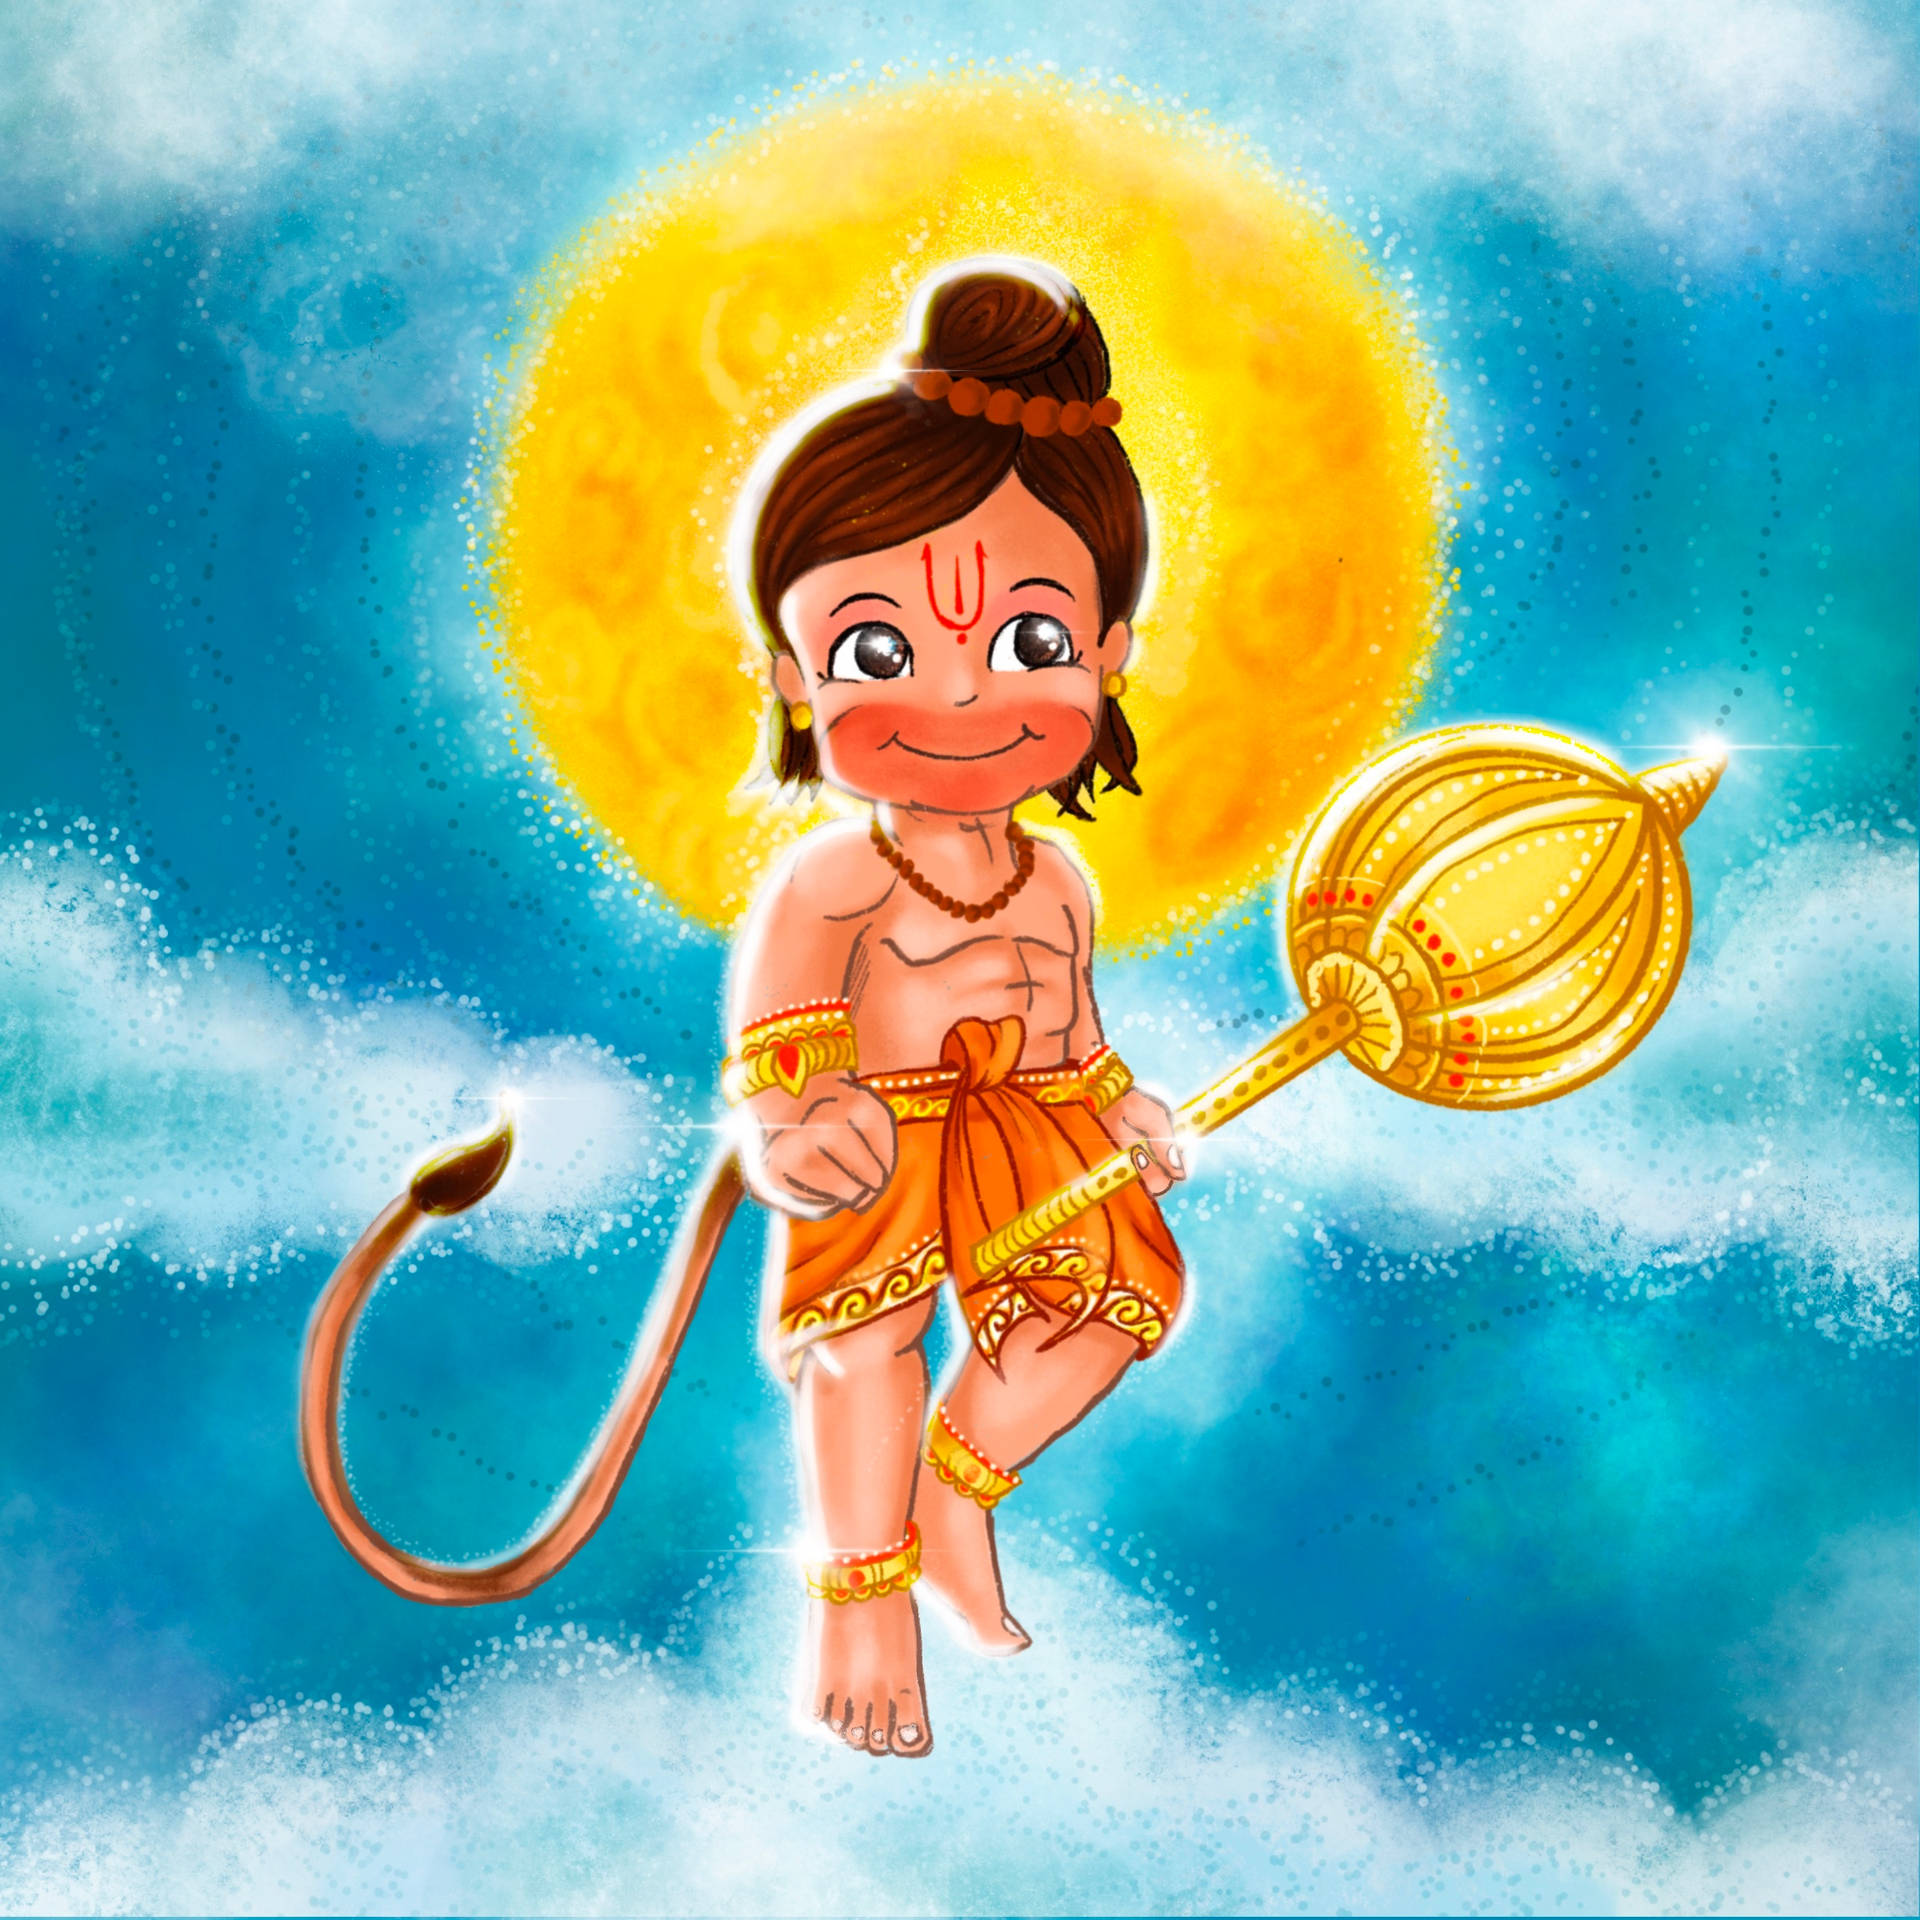 Baby hanuman Wallpapers Download | MobCup